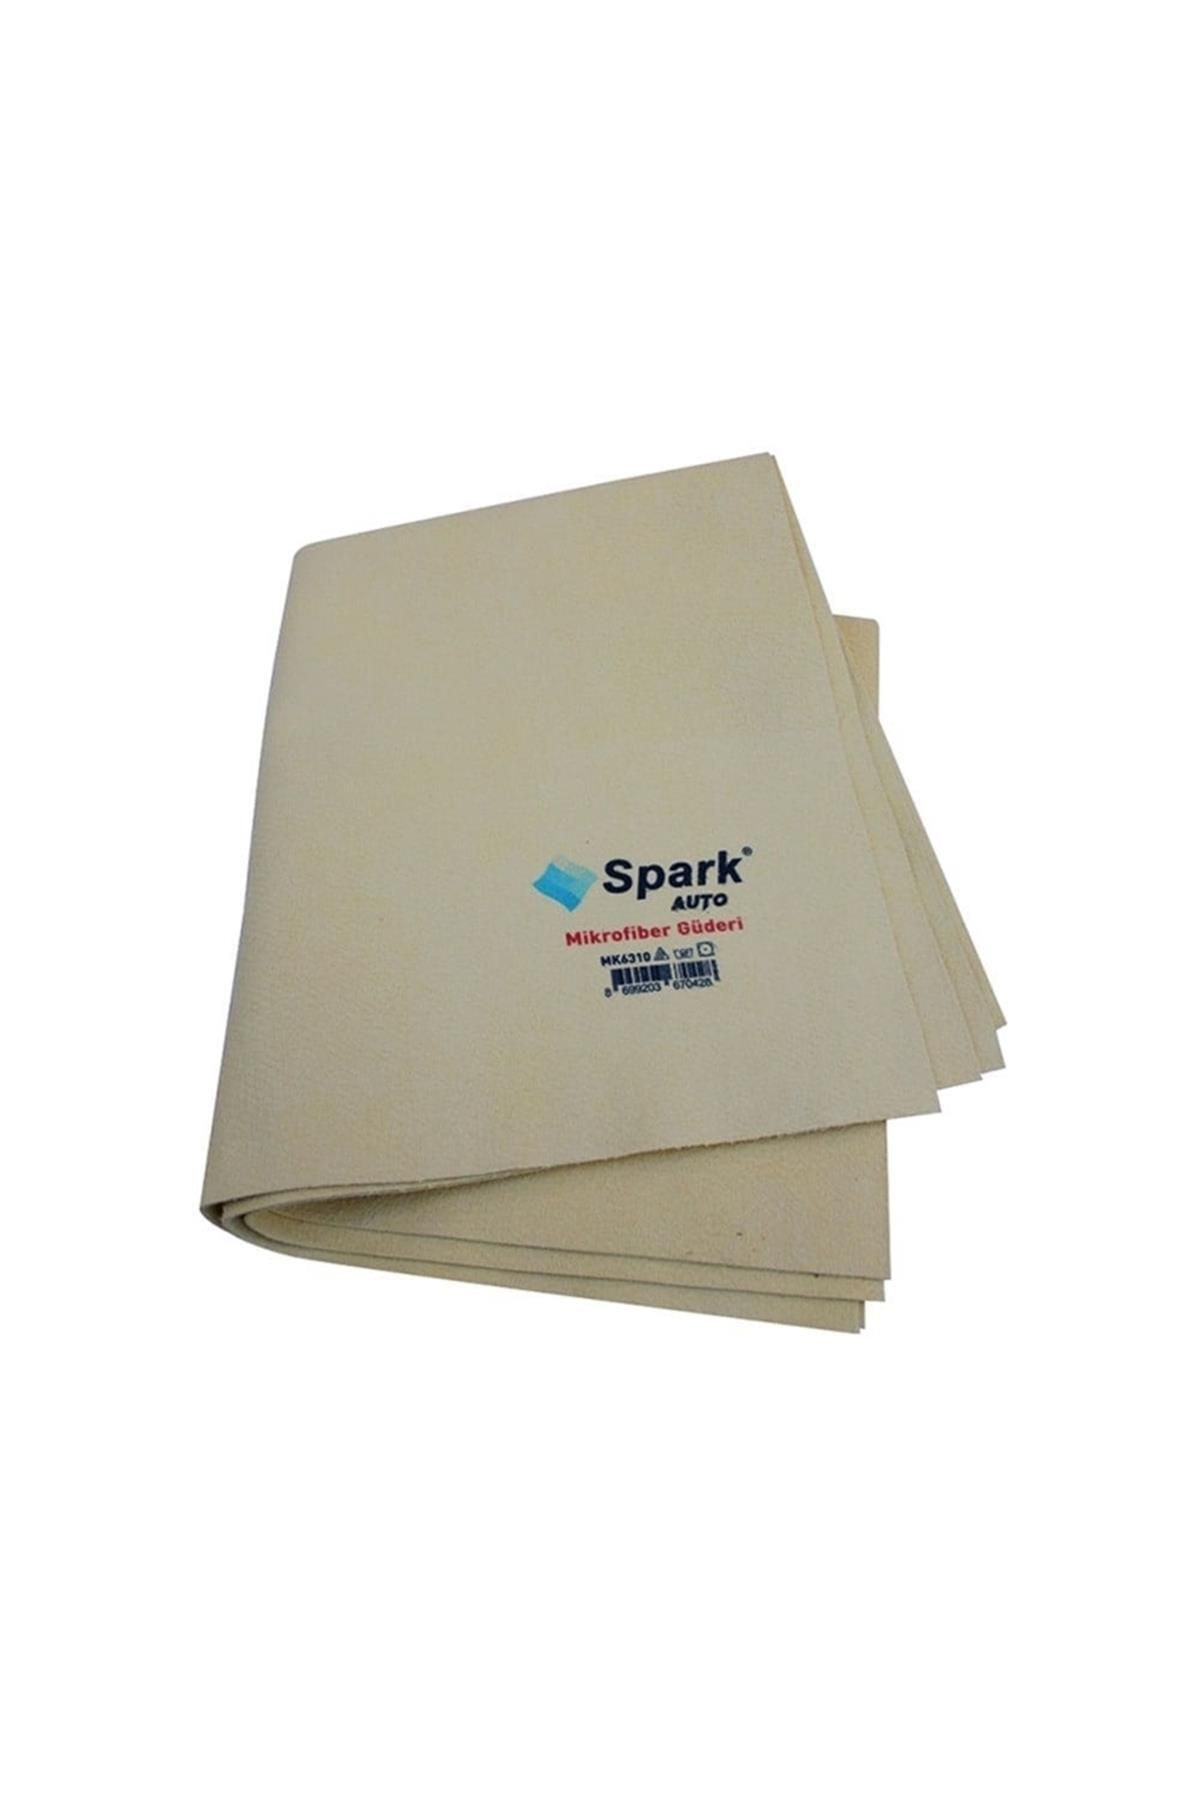 Spark MK6310 GÜDERİ MİKROFİBER BEZ 50*60